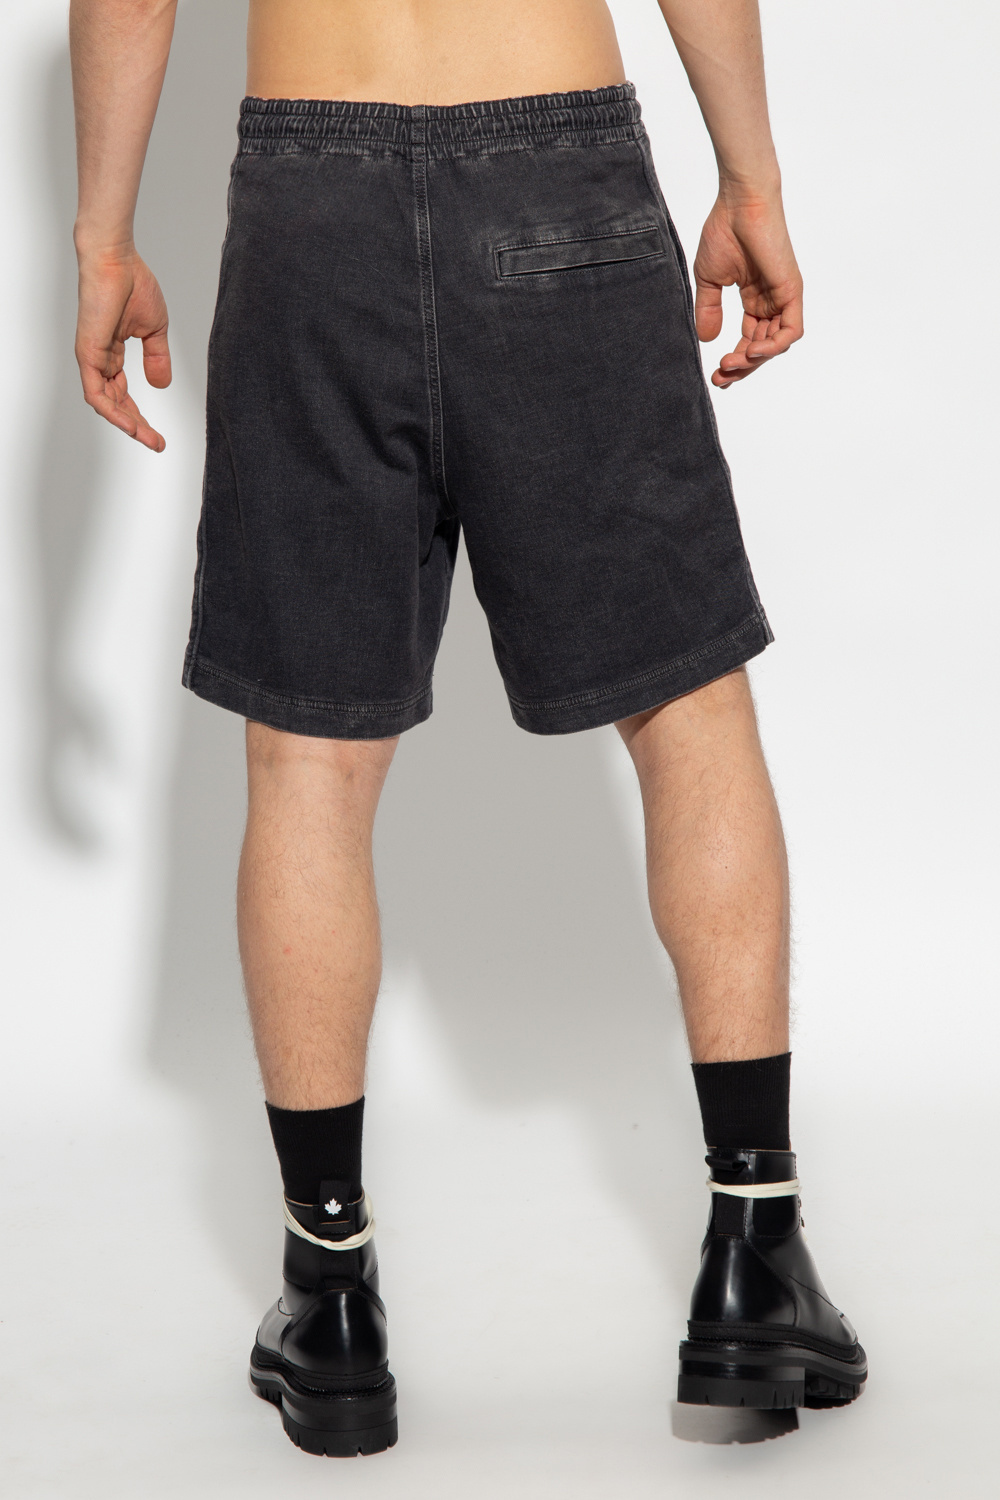 Diesel 'D-BOXY-NE' denim shorts | Men's Clothing | Vitkac